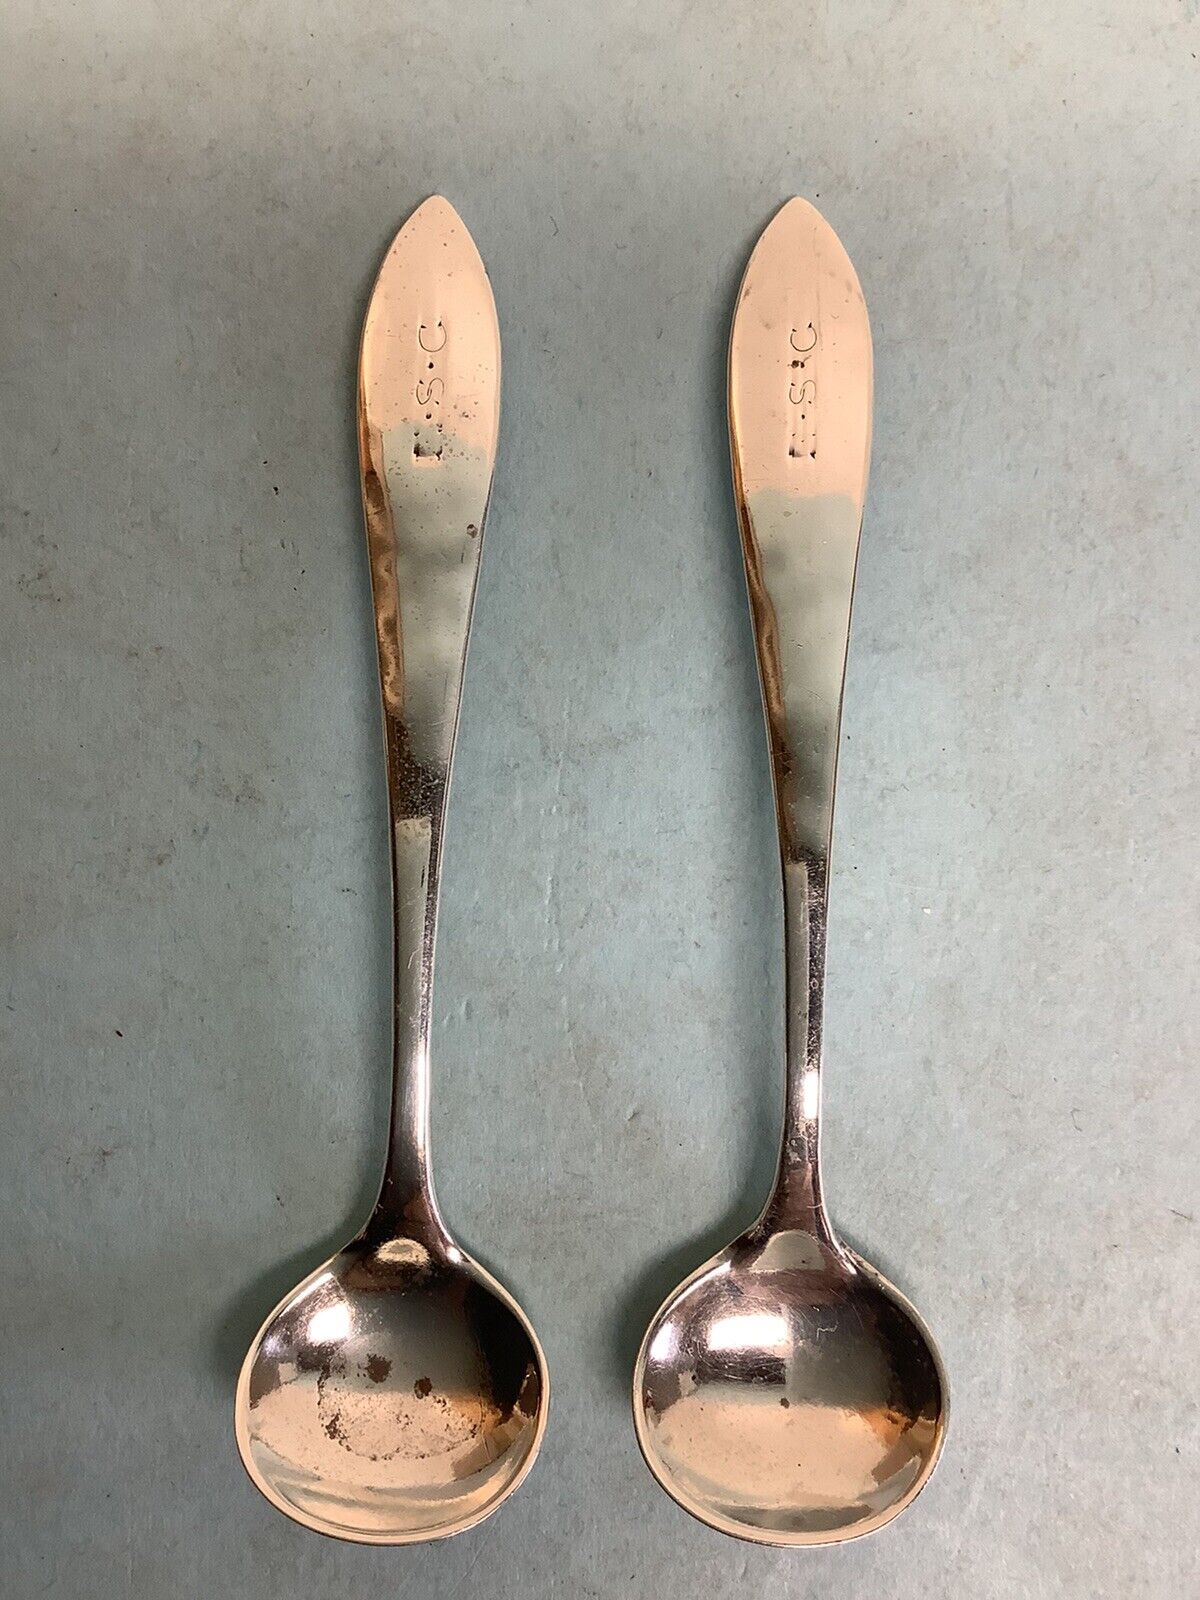 Pair Of Sterling Silver Salt Spoons 3” L.